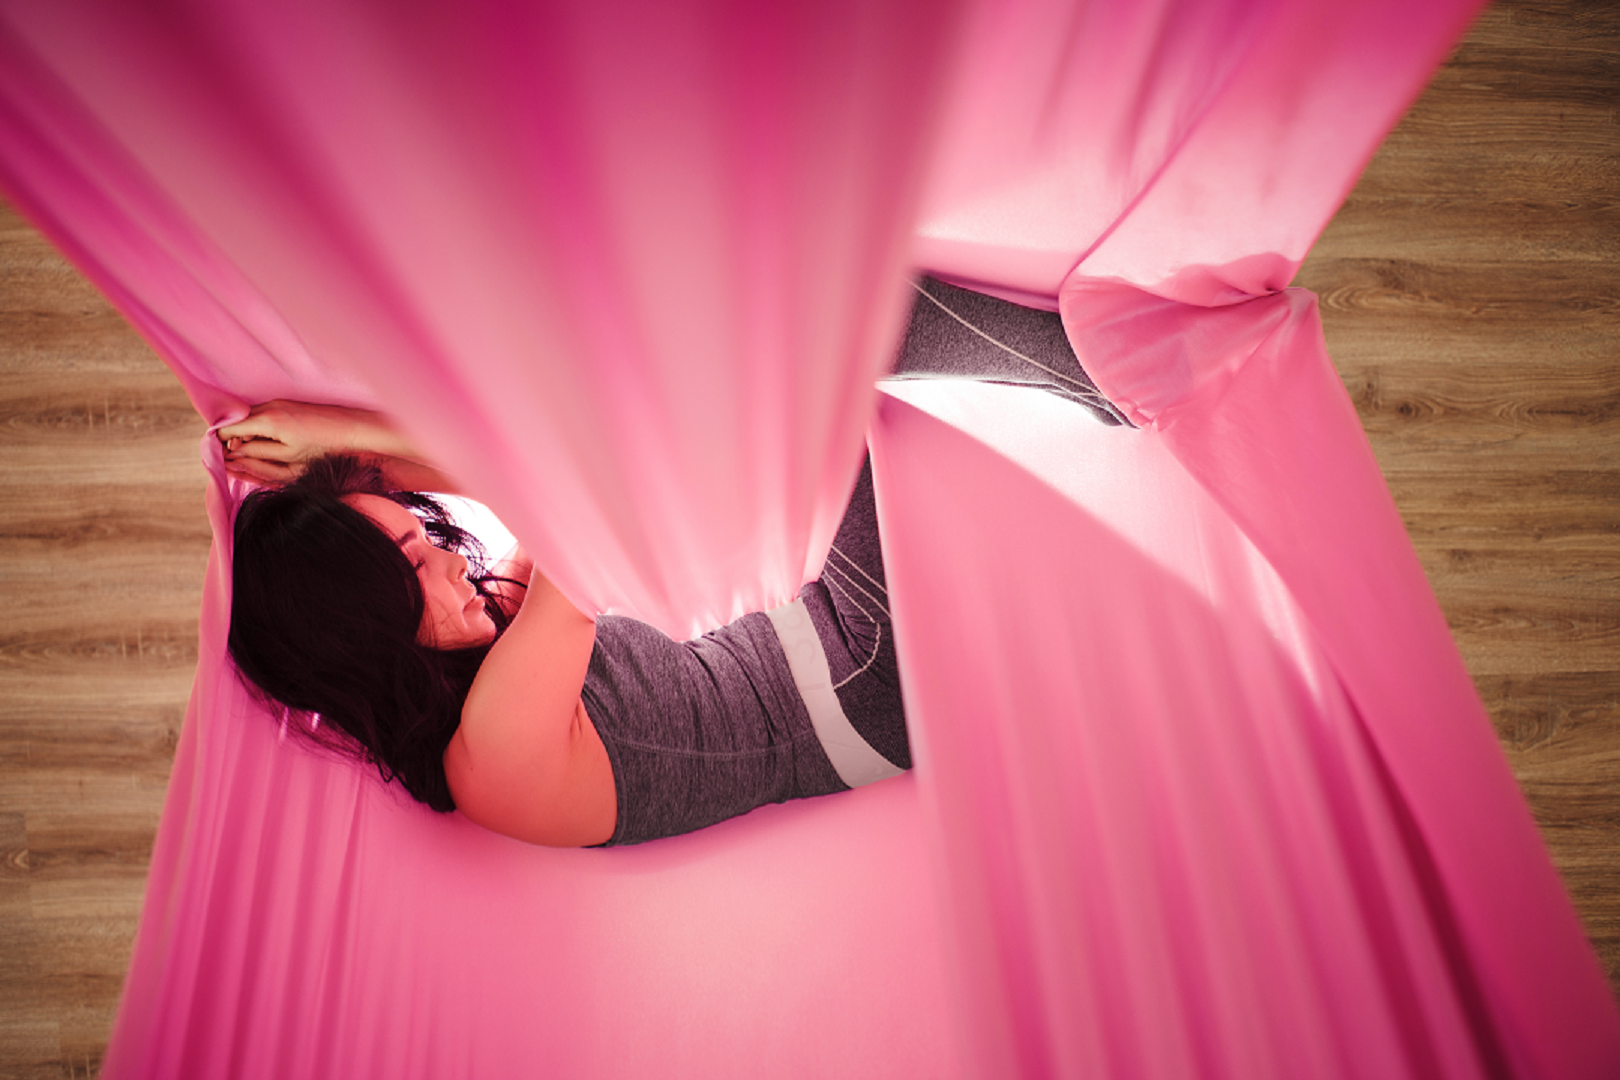 Girl sleeping pr resting on her pink aerial hammock